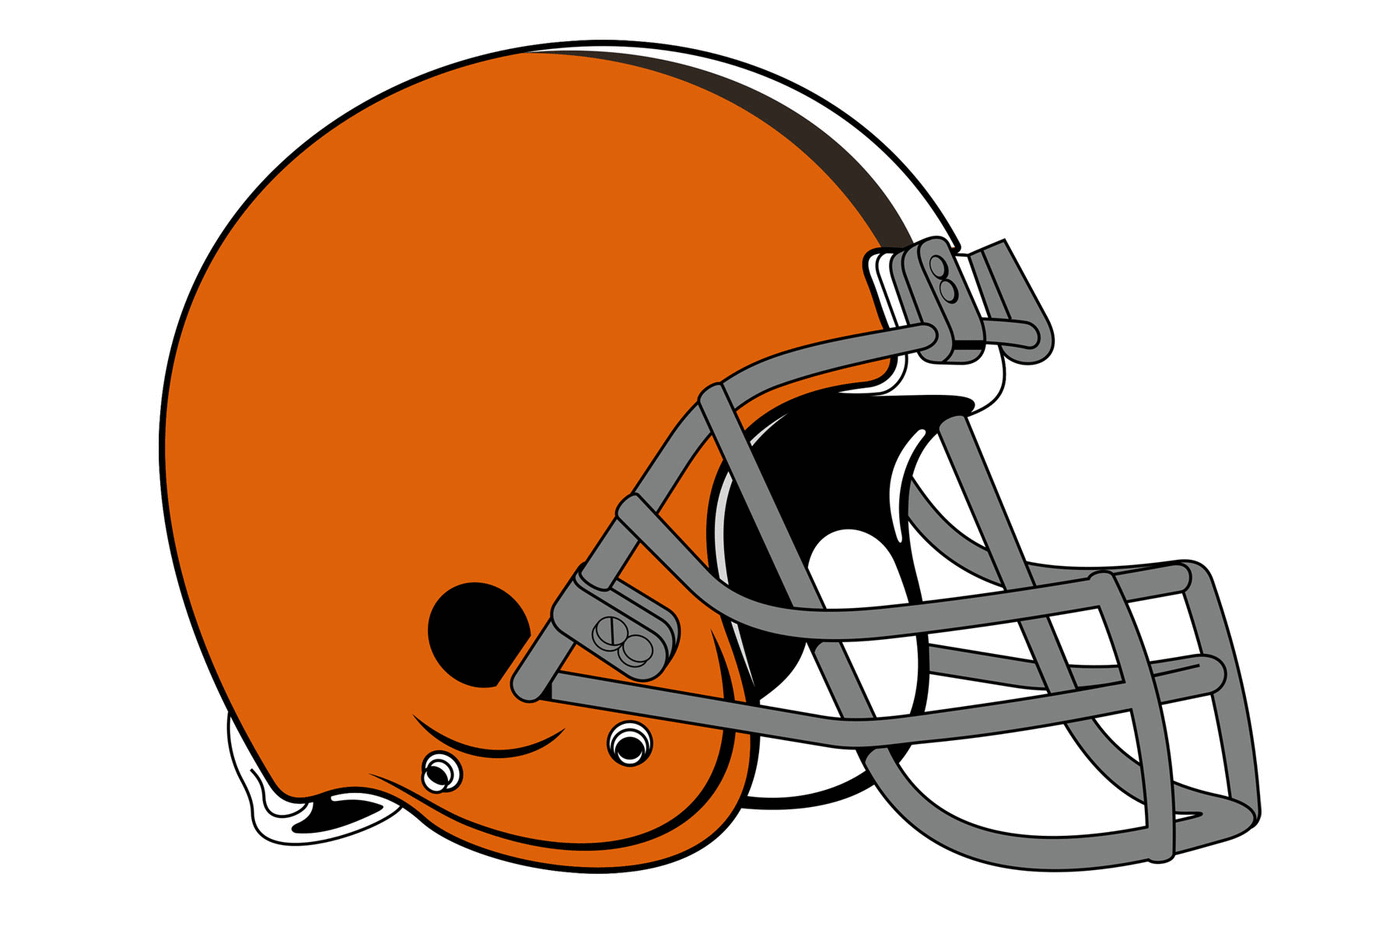 Cleveland Browns Football Helmet